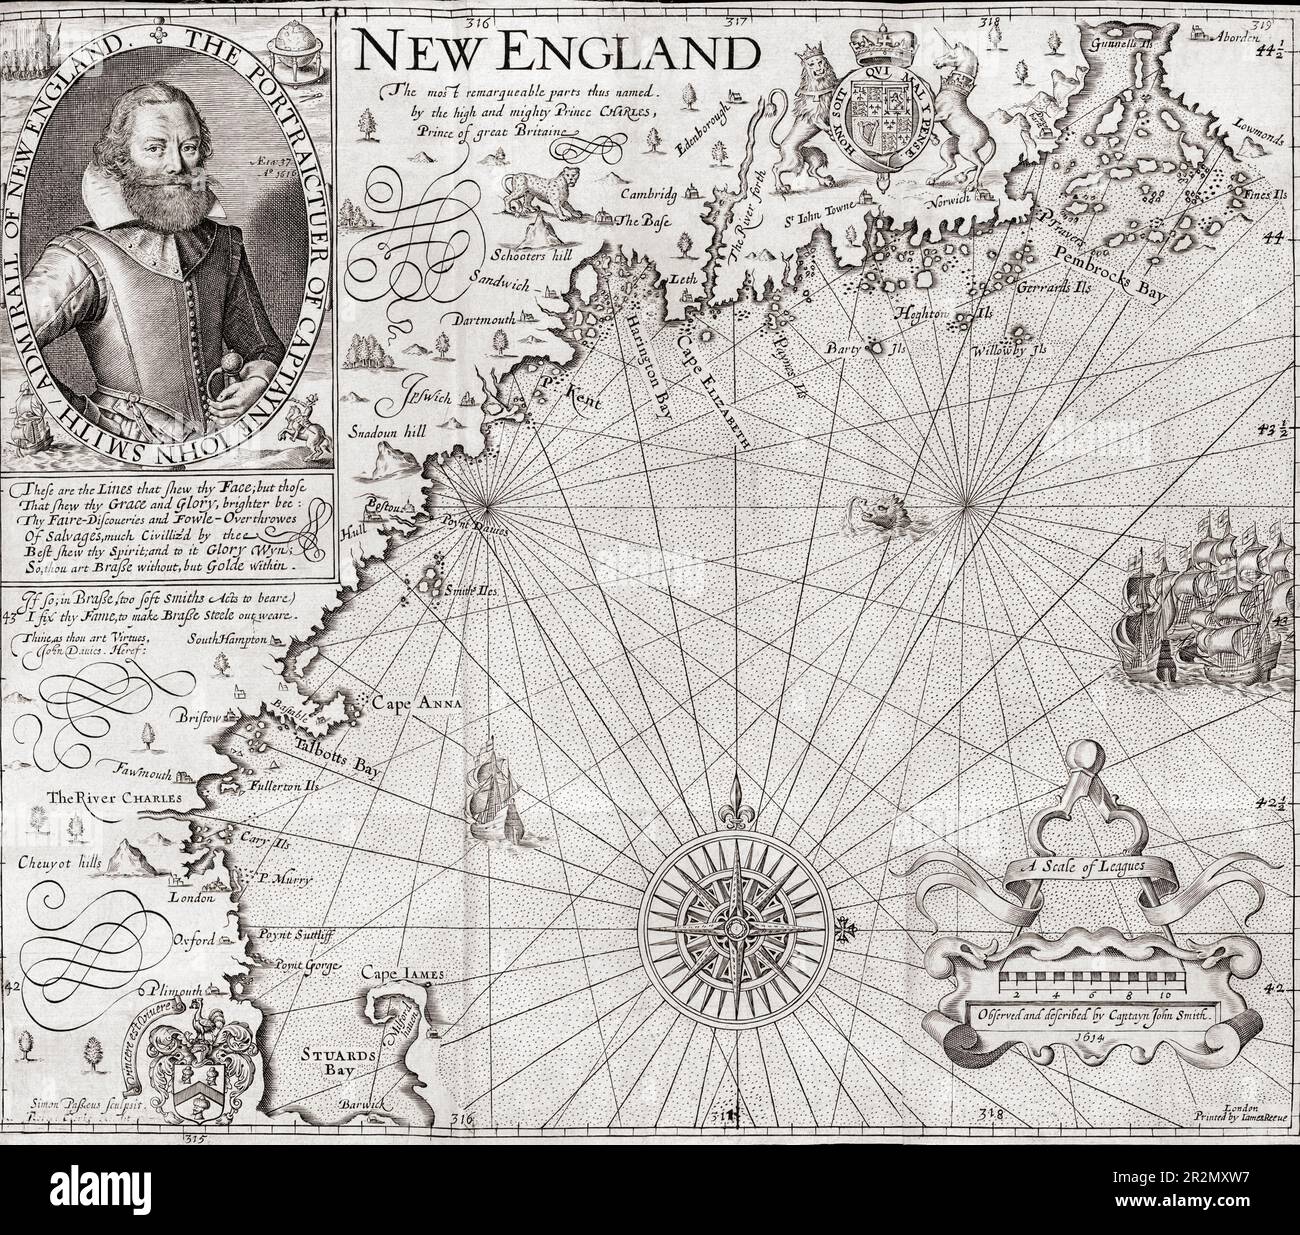 Karte von New England mit einem Porträt von John Smith, der Jamestown gegründet hat und später der dritte Präsident des gouverneursrats der Siedlung war. Die Karte wurde von Simon van de Pass eingraviert und in Smiths Buch über die generelle Geschichte von Virginia, New England, und den Summer Isles, 1629. Auflage, aufgenommen. Stockfoto